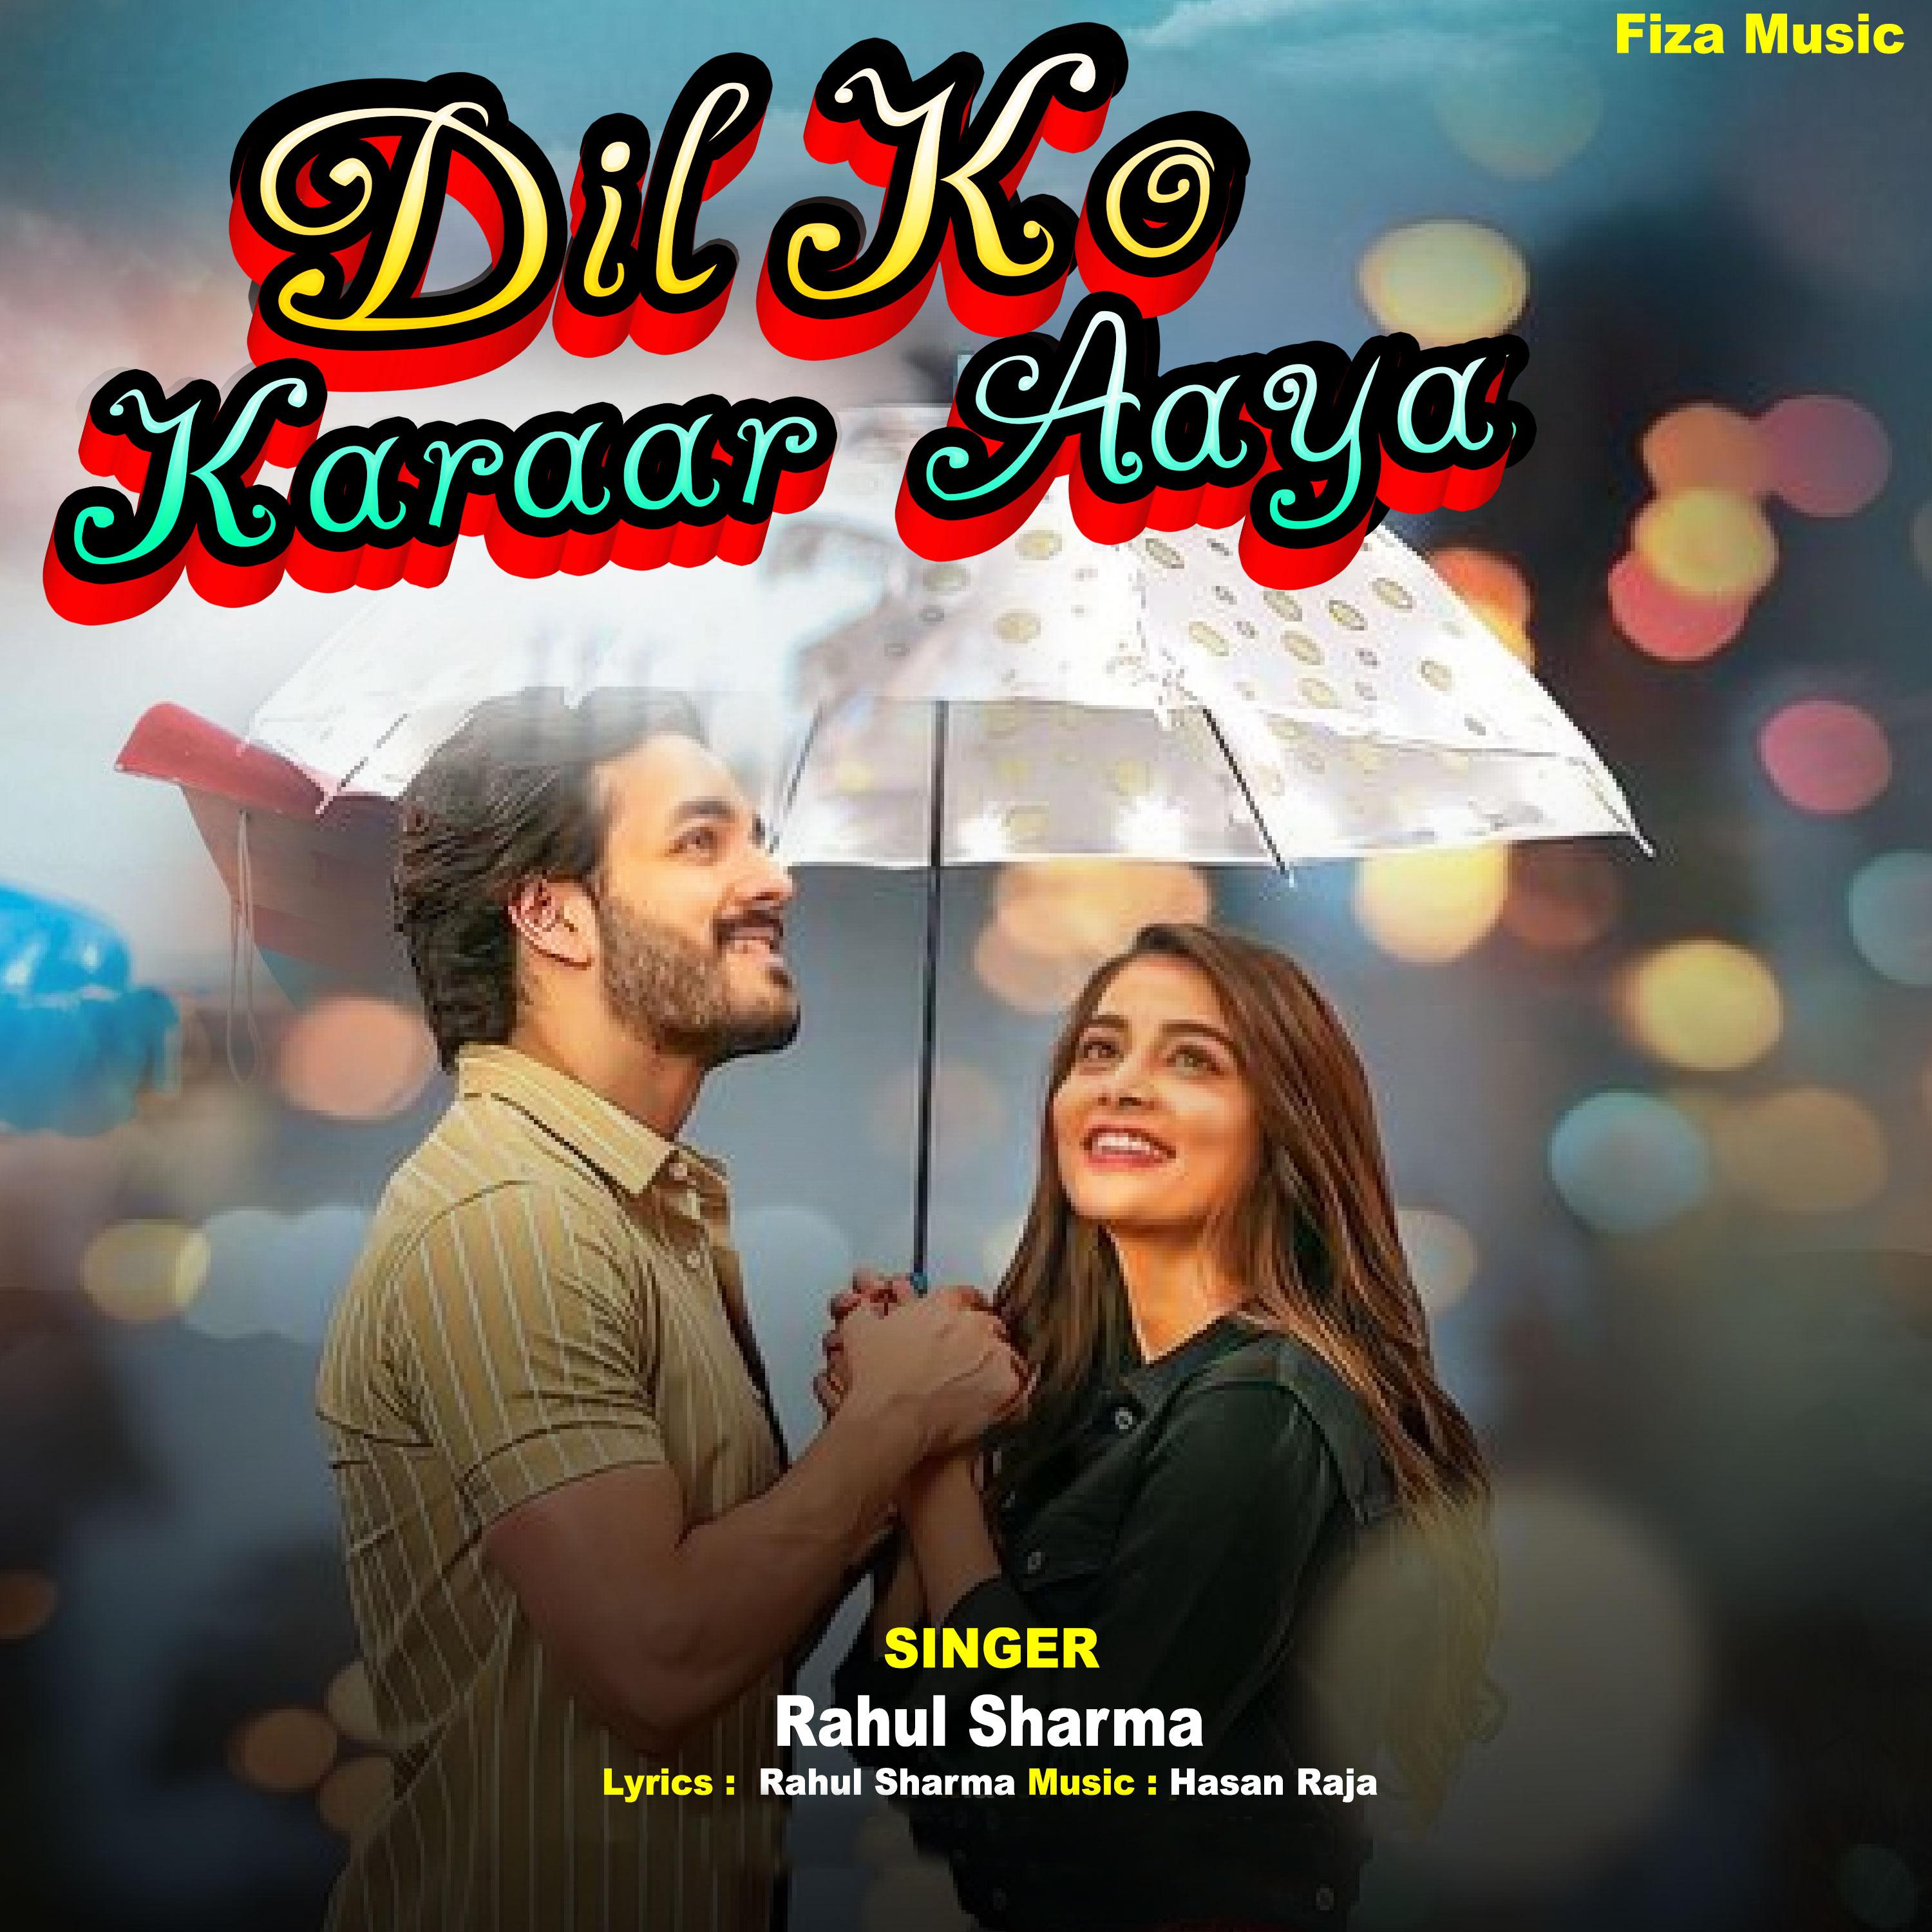 Постер альбома Dil Ko Karaar Aaya